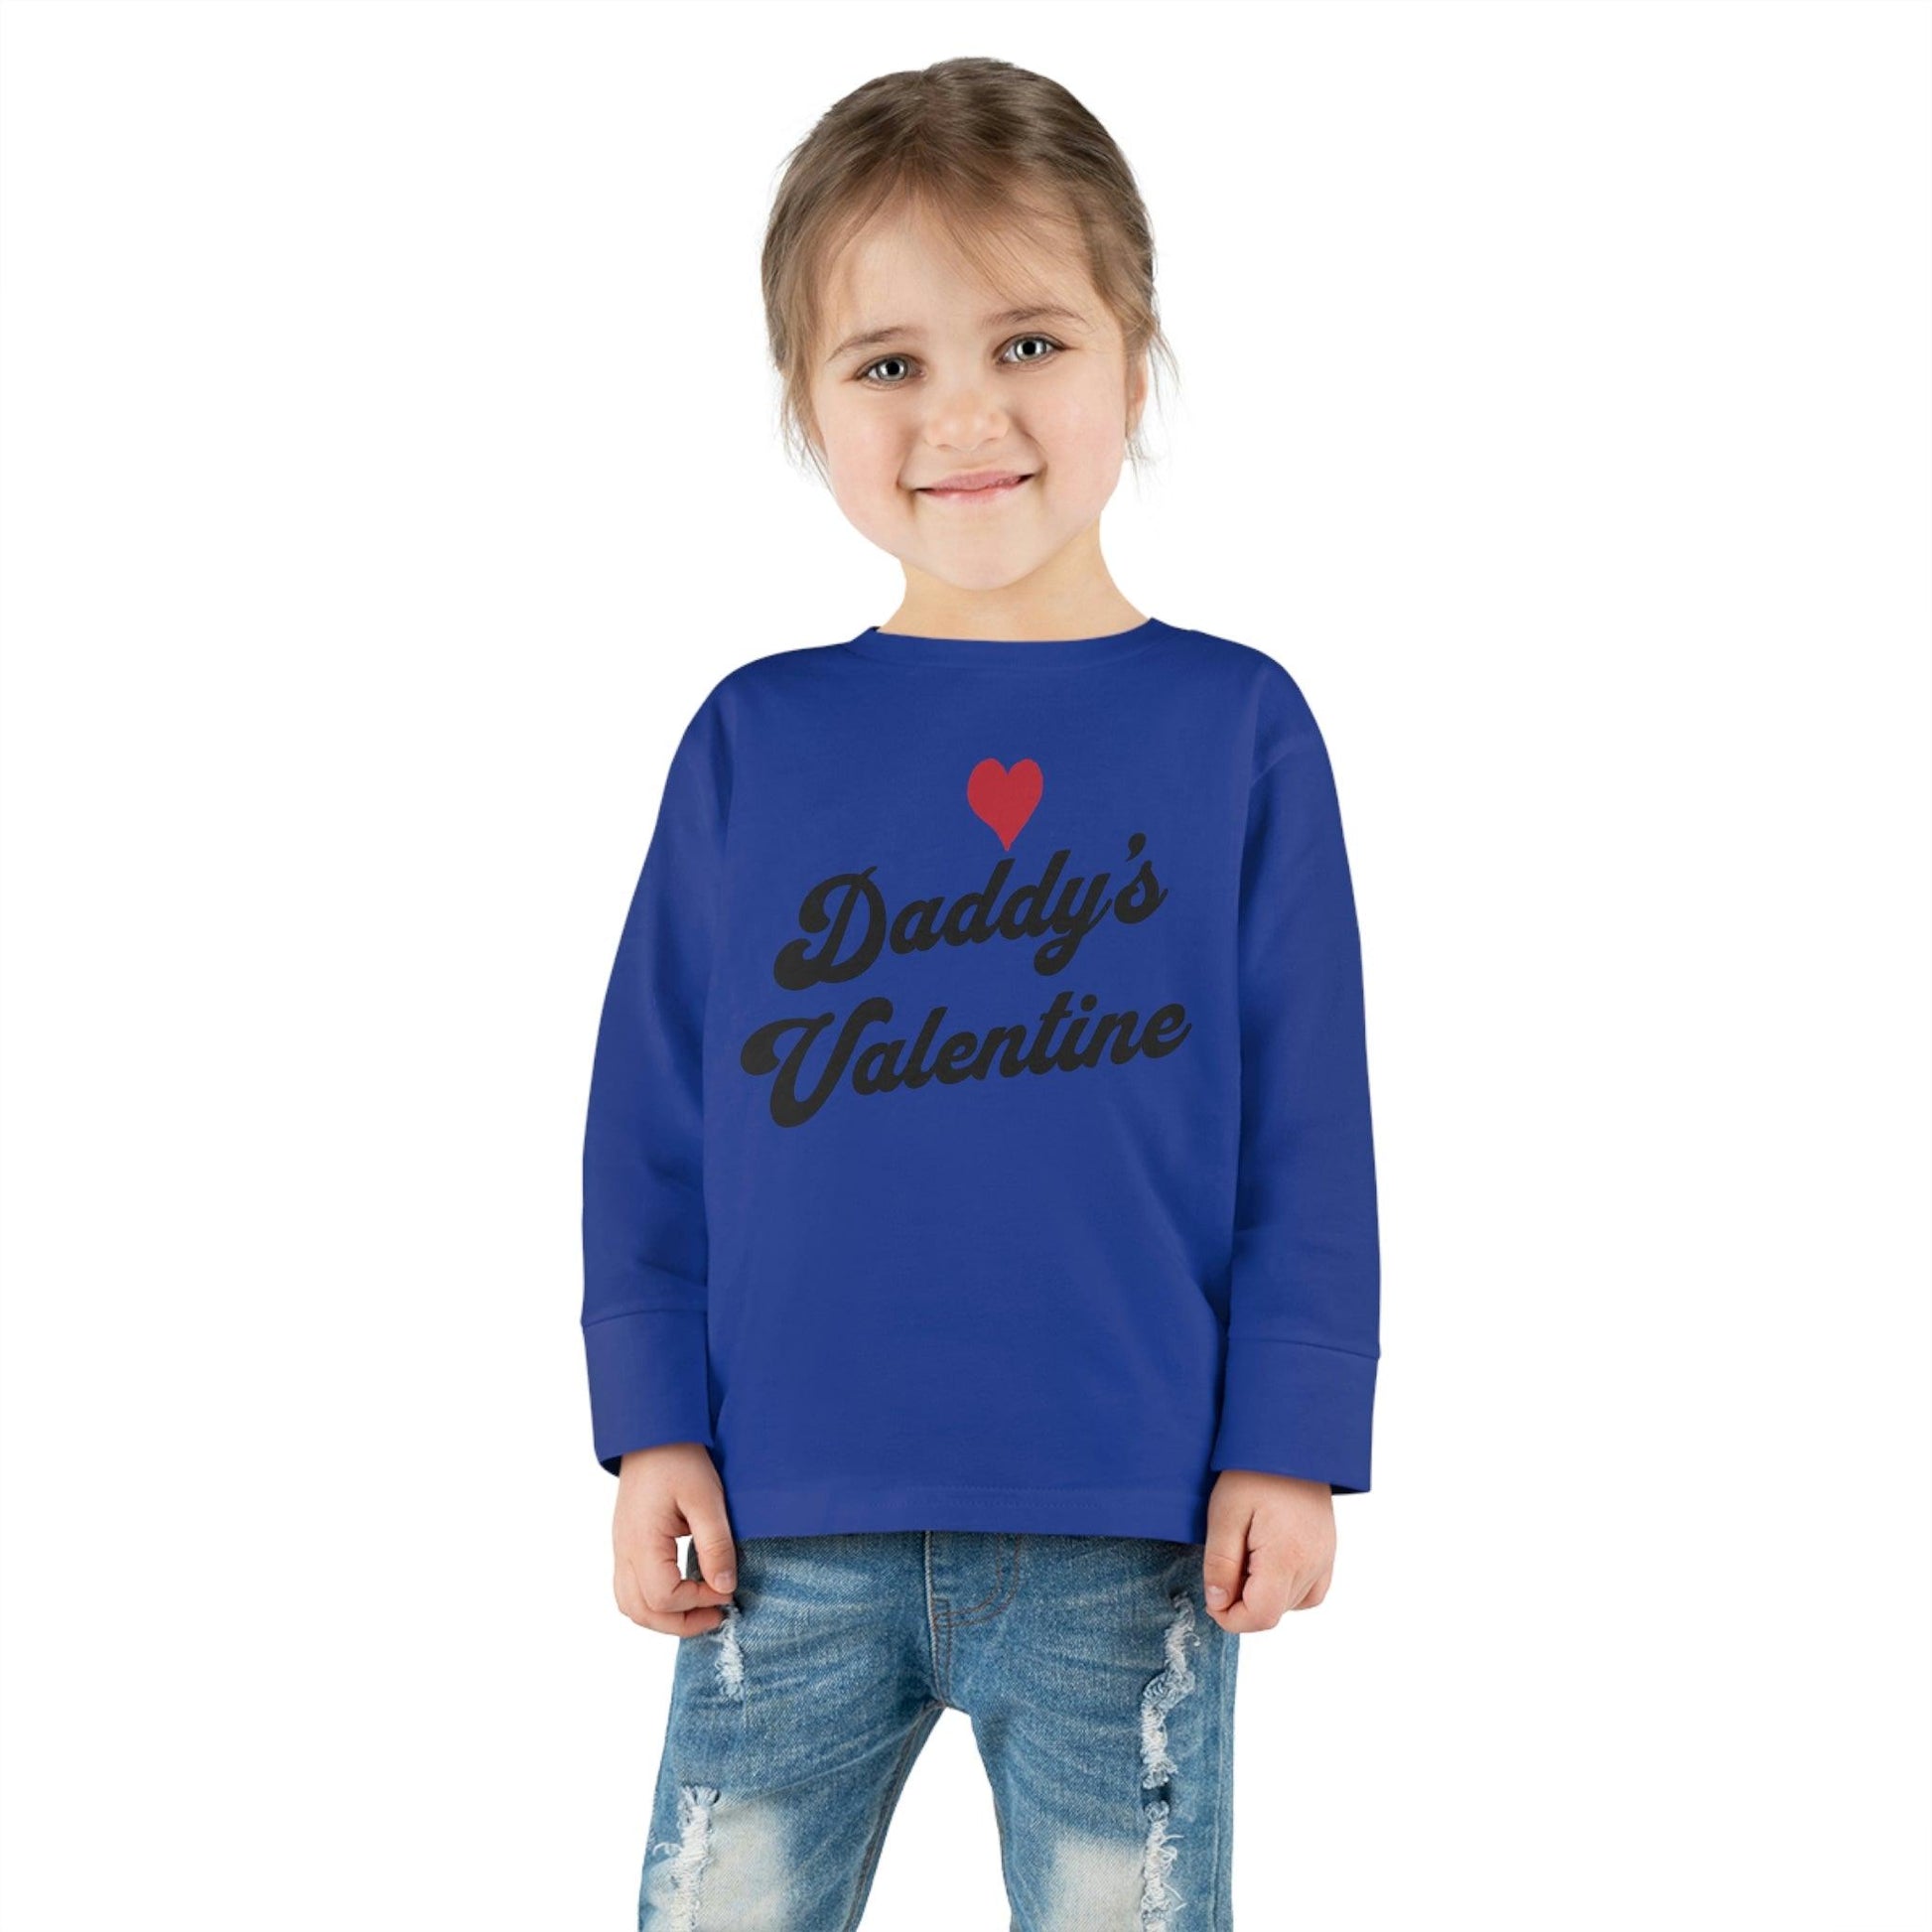 Daddy's Valentine - Kids Valentine day shirt - Giftsmojo